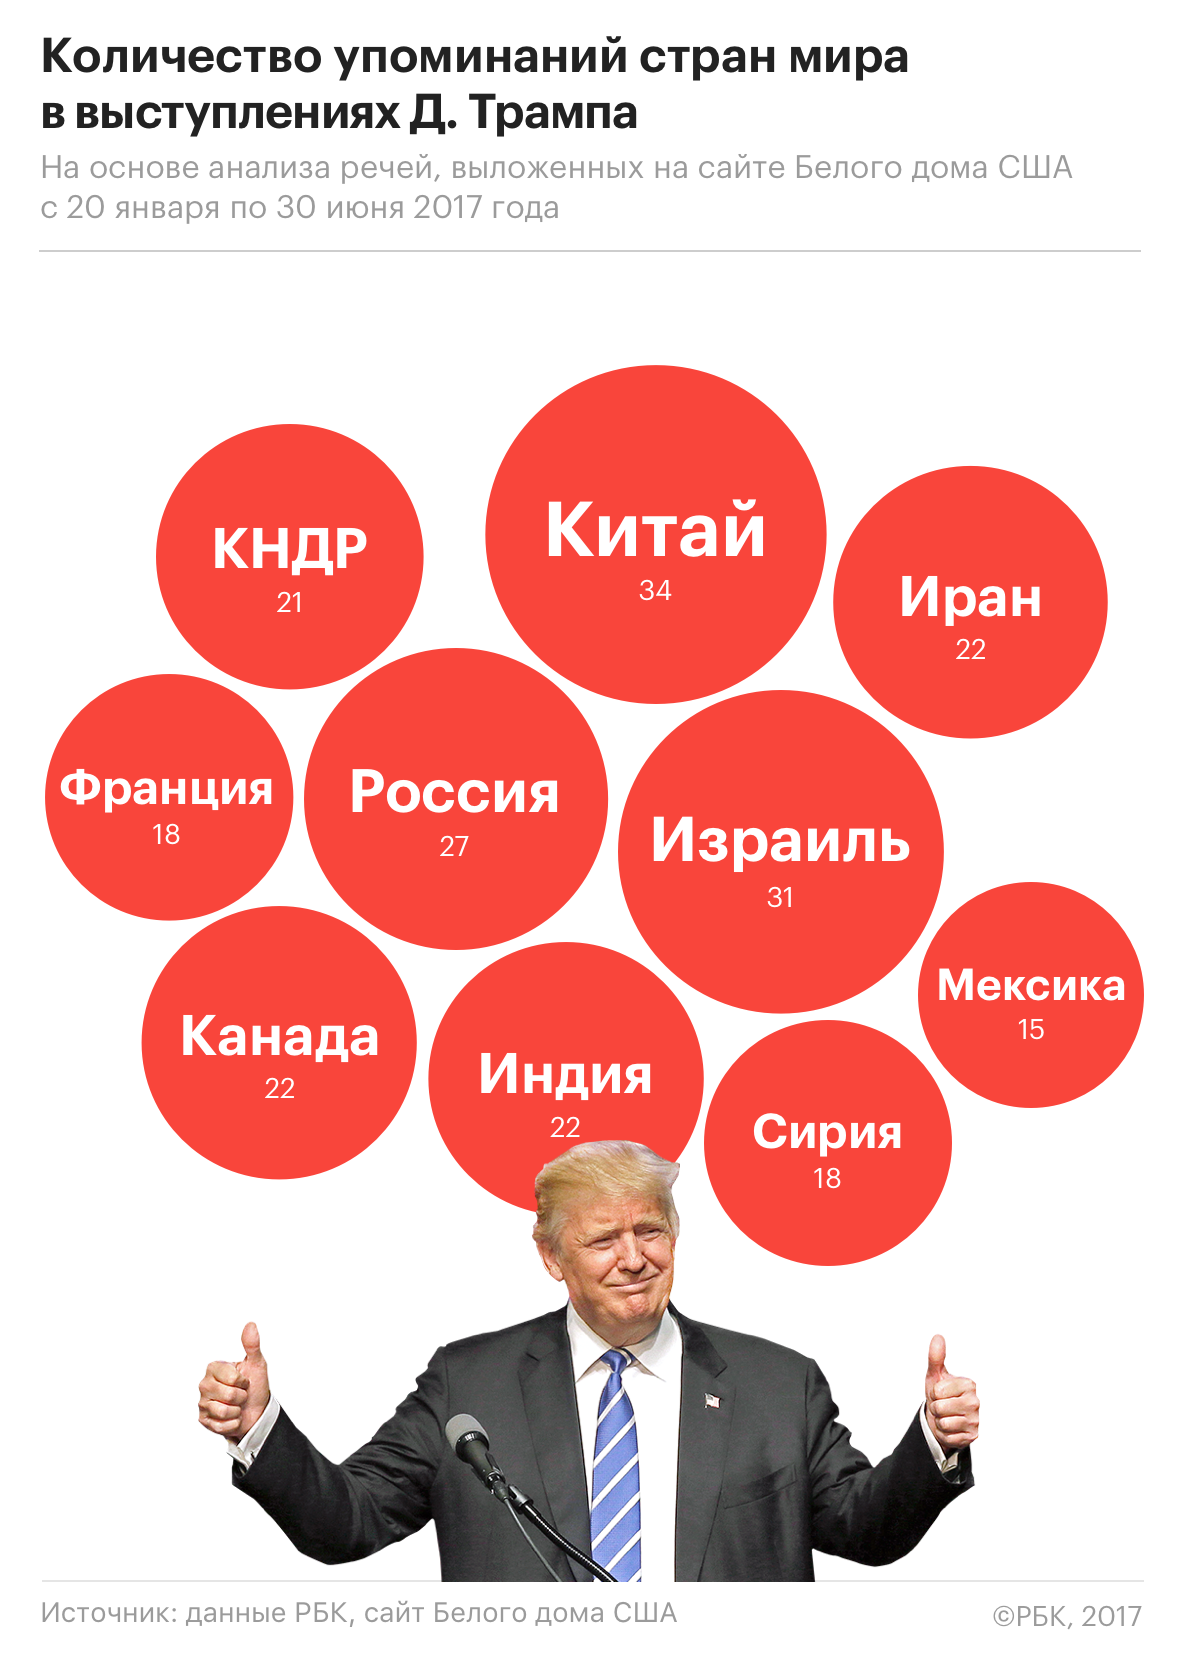 Путин и Трамп чаще всего говорили о США и России